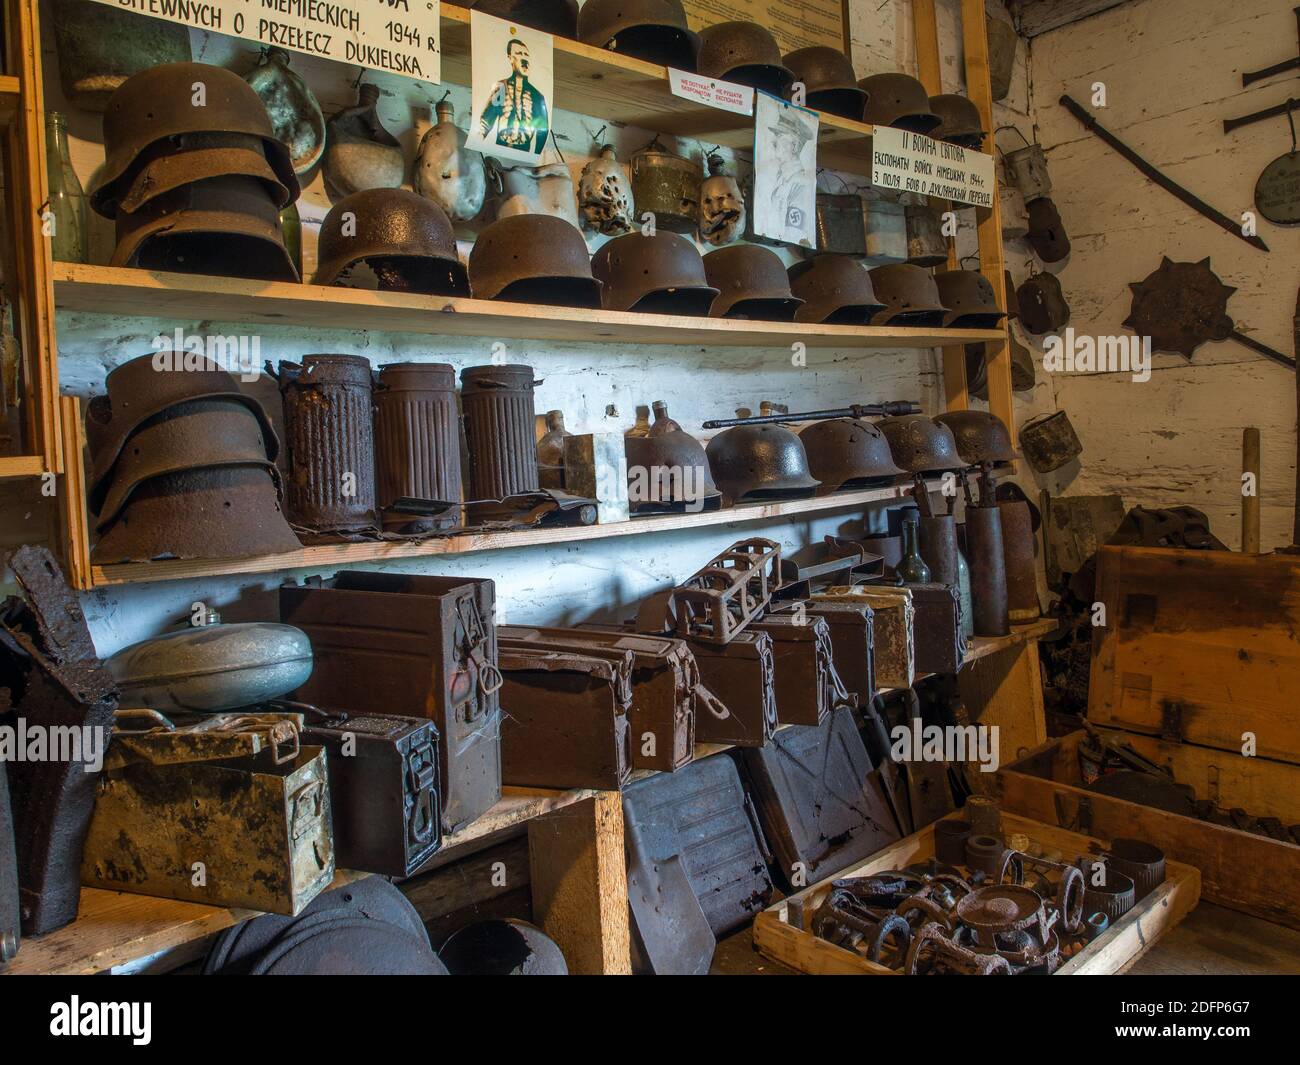 Zyndranowa, Pologne - 13 août 2017 : collection de casques, navires et autres accessoires de guerre anciens au musée de la culture Lemko Banque D'Images